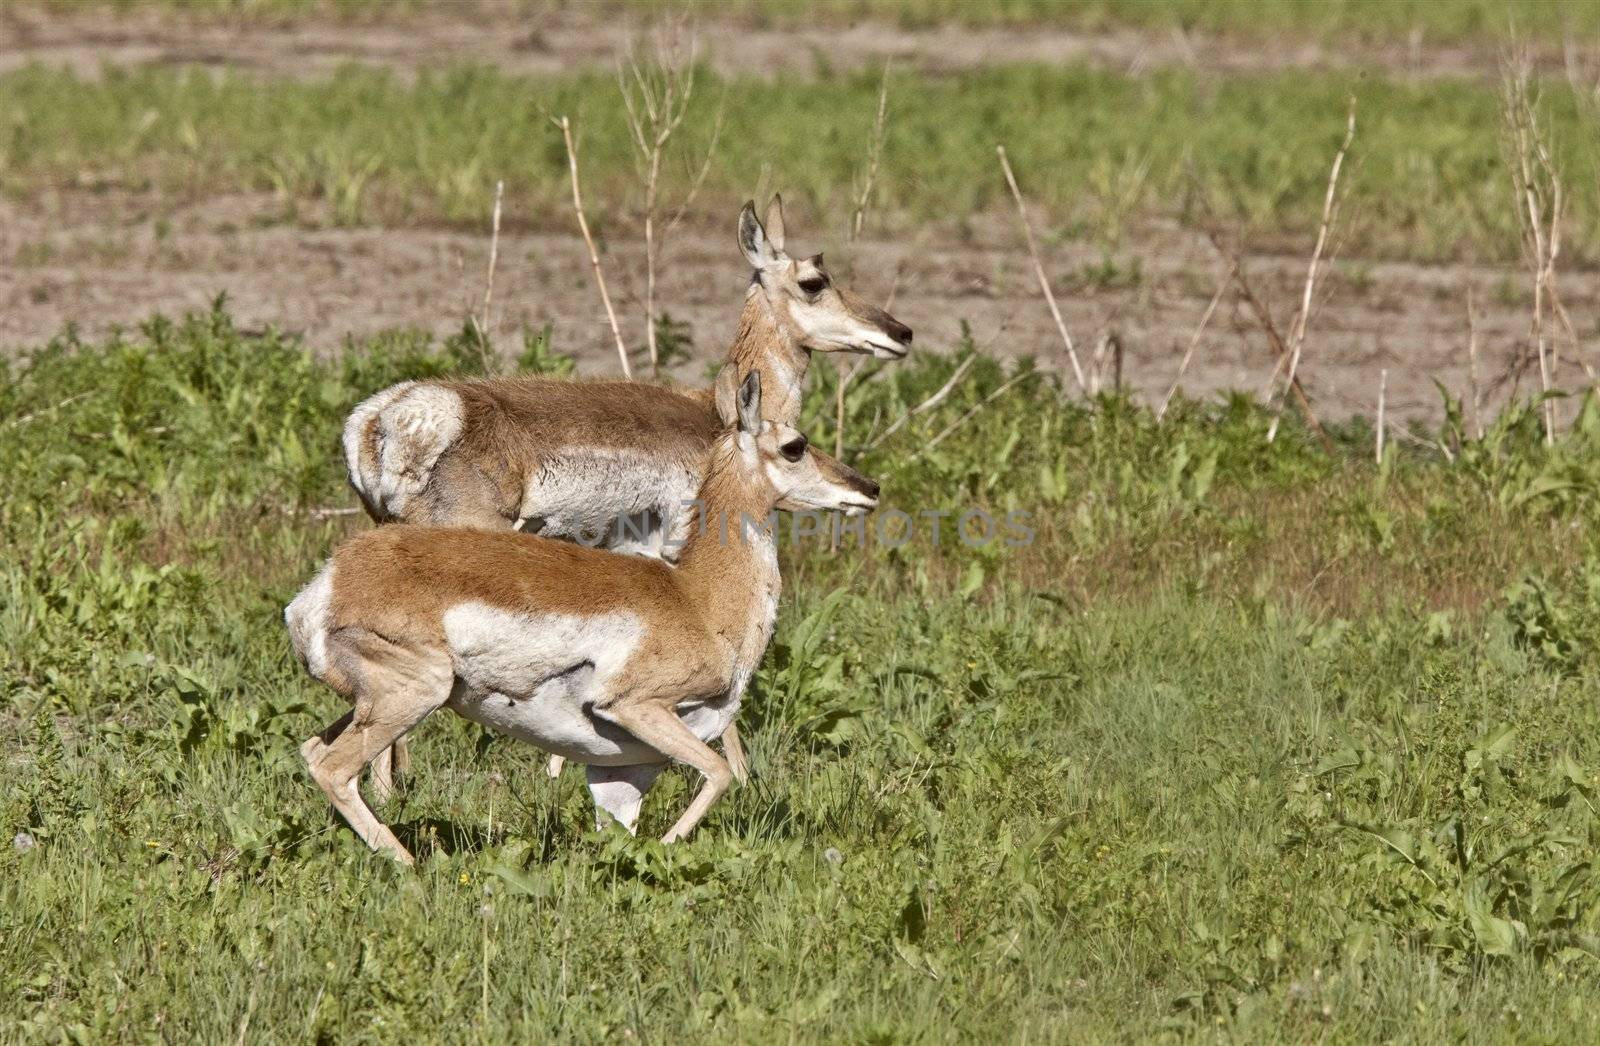 Pronghorn Antelope With Young Babies Saskatchewan Canada